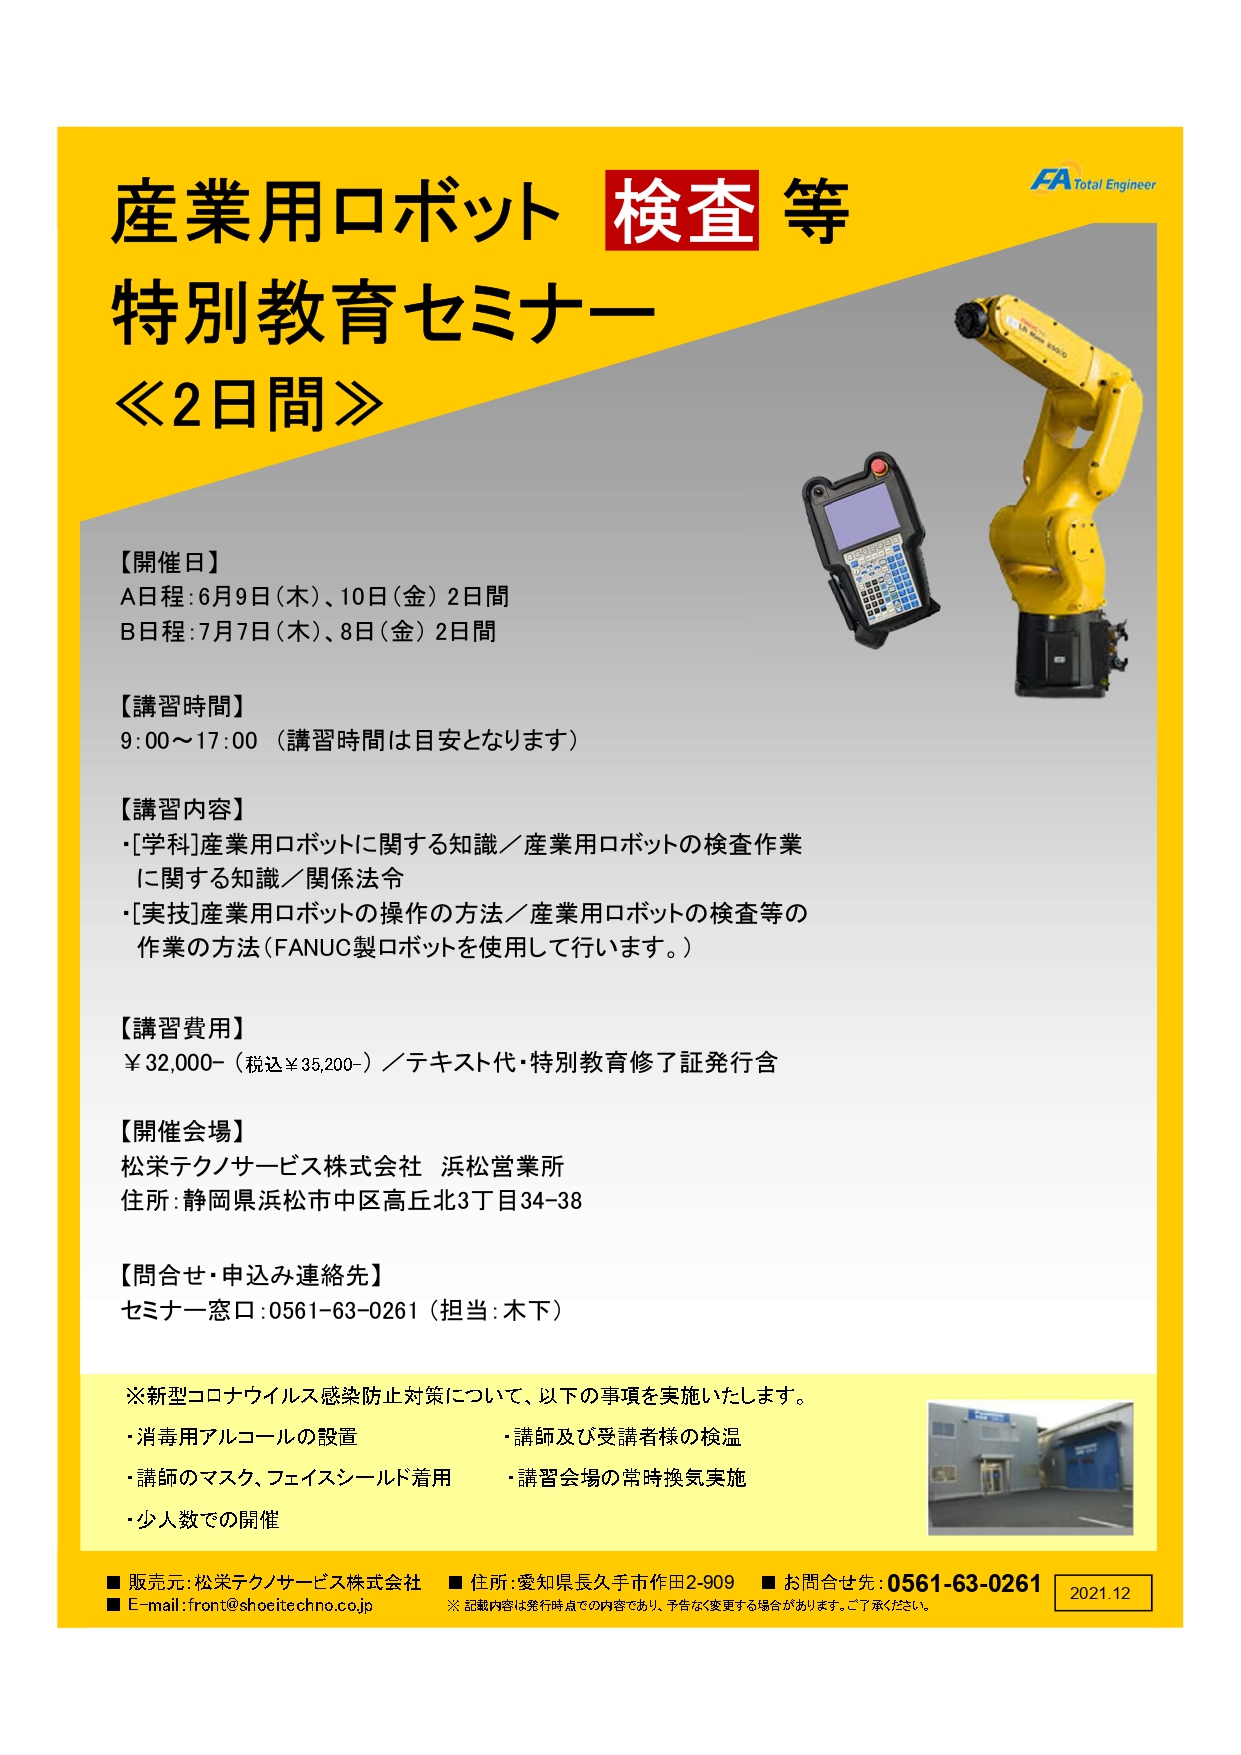 【静岡県開催】産業用ロボット特別教育（検査等）セミナー開催のお知らせ